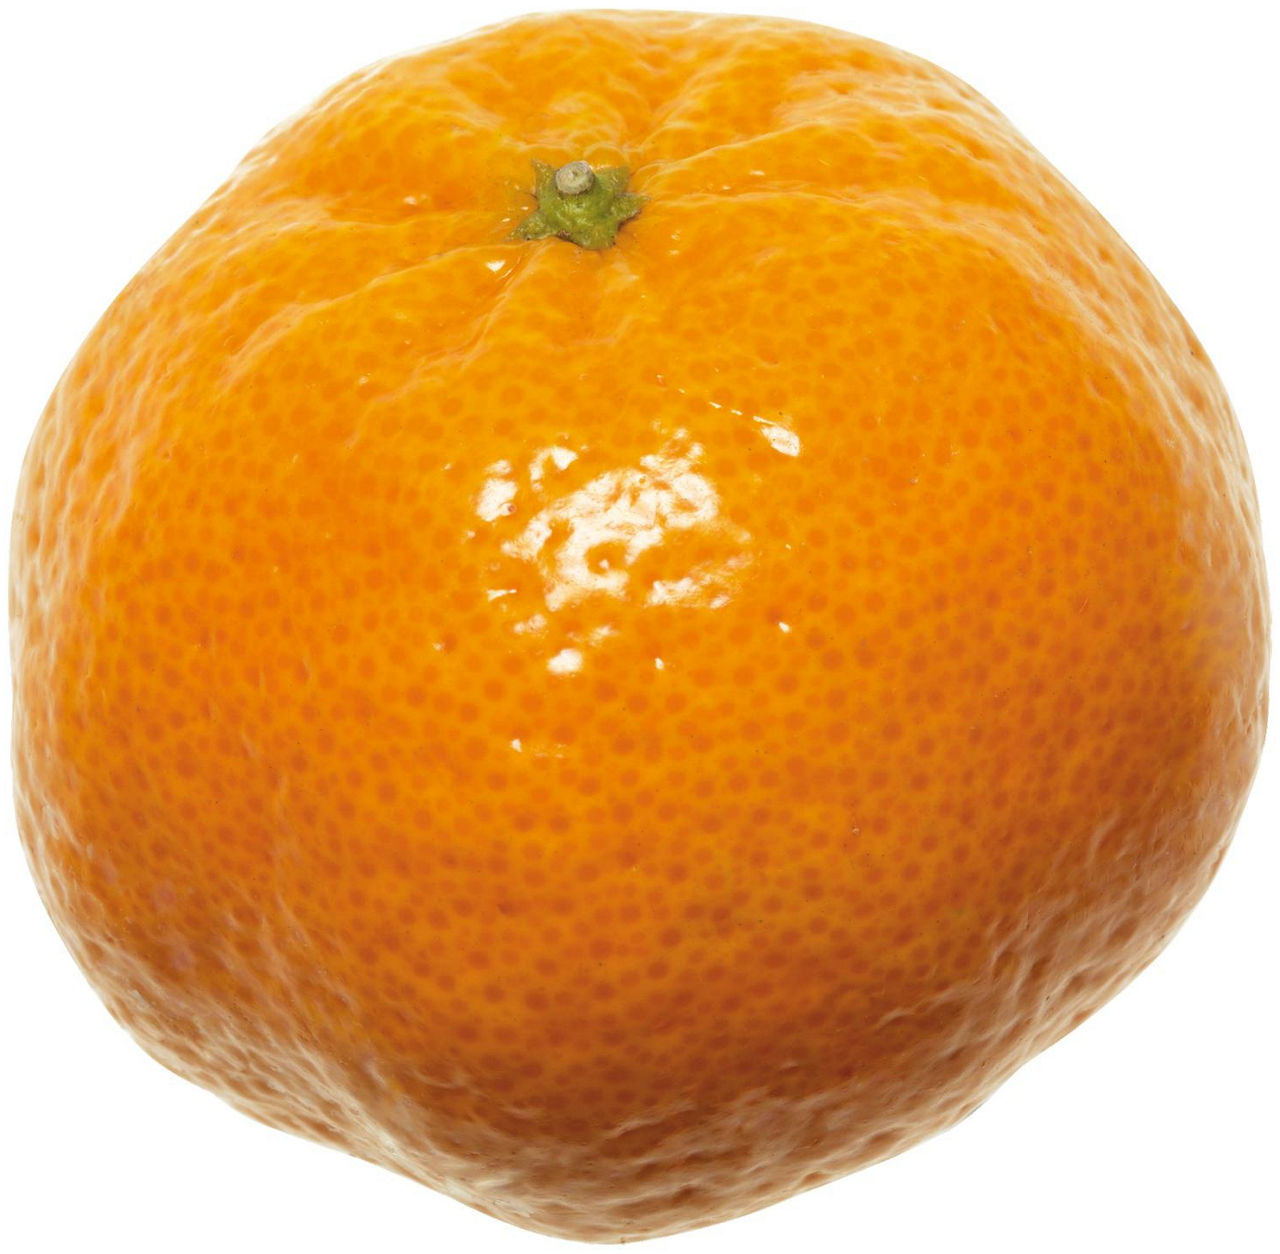 Mandarini tardivo di ciaculli kg 1 - 1